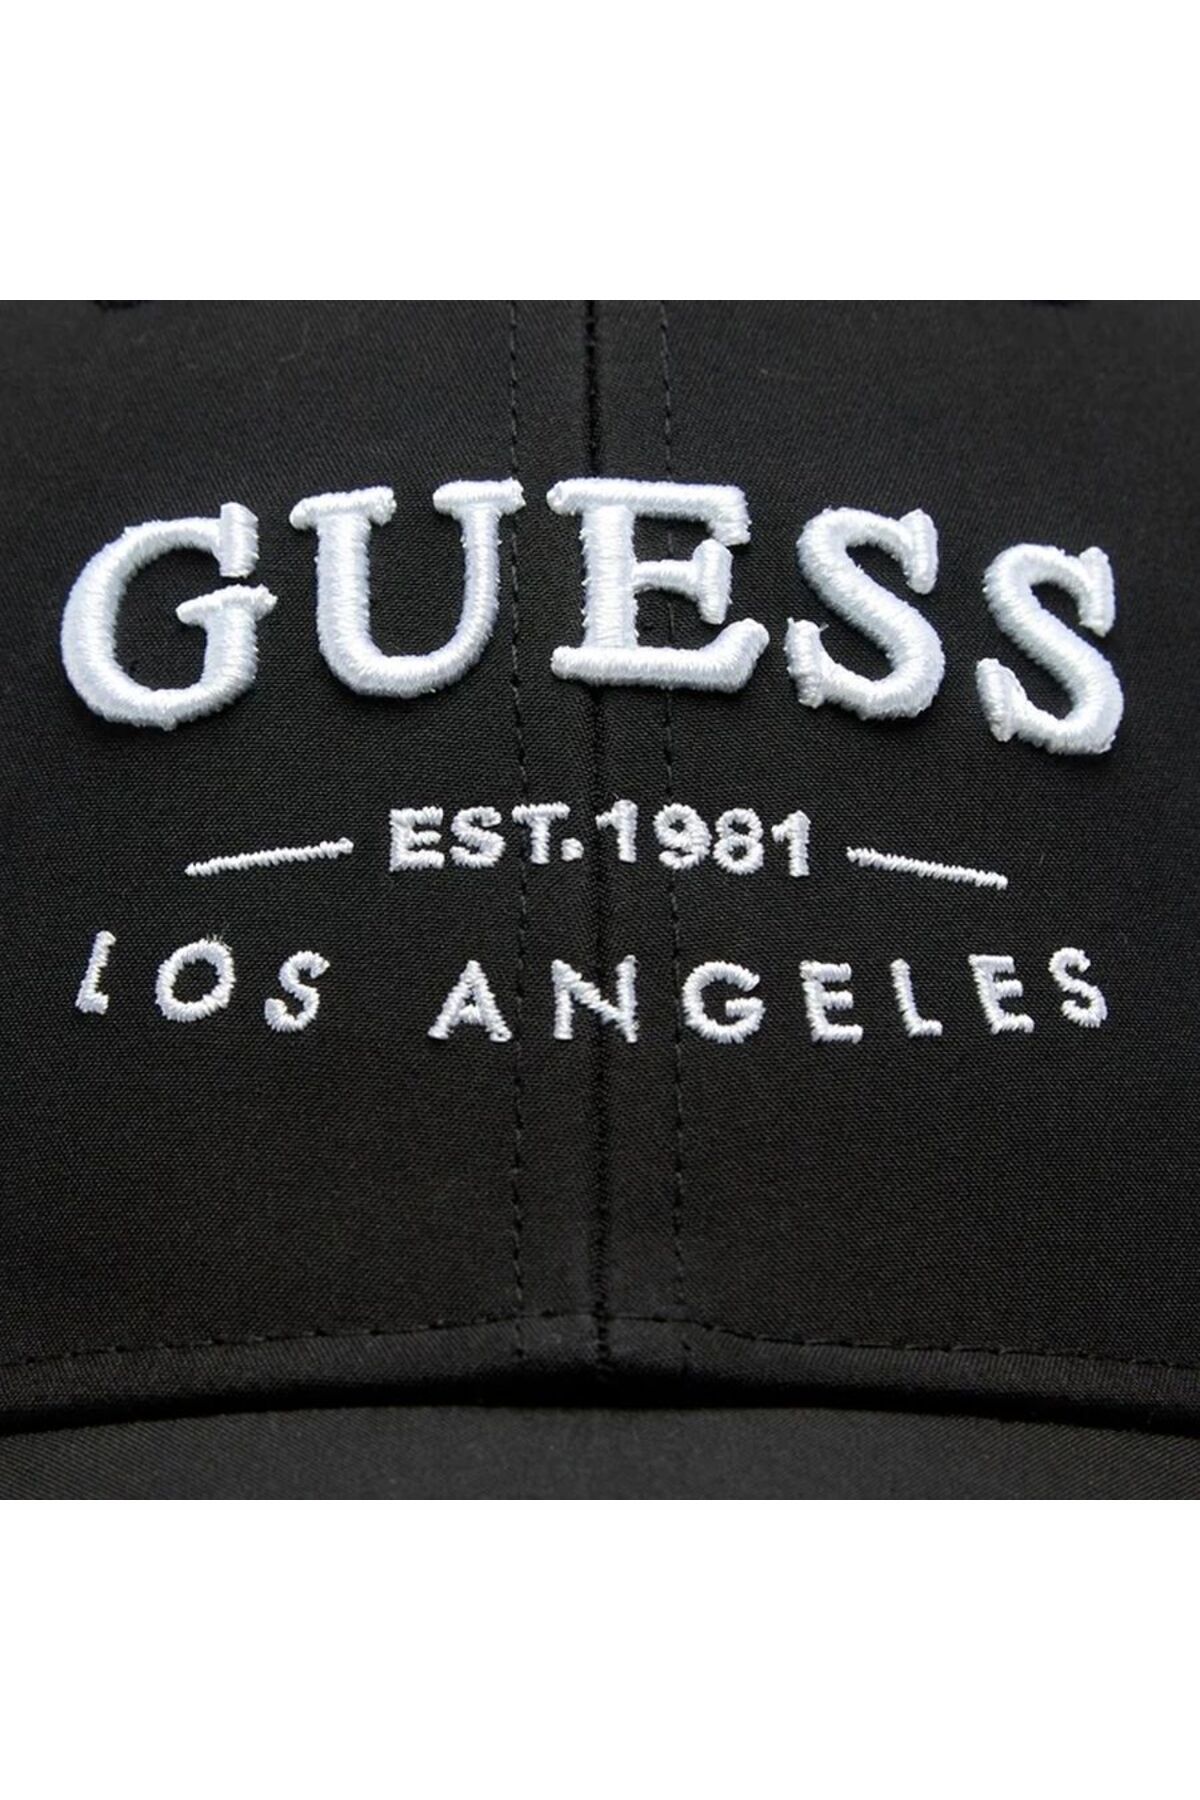 Guess کلاه